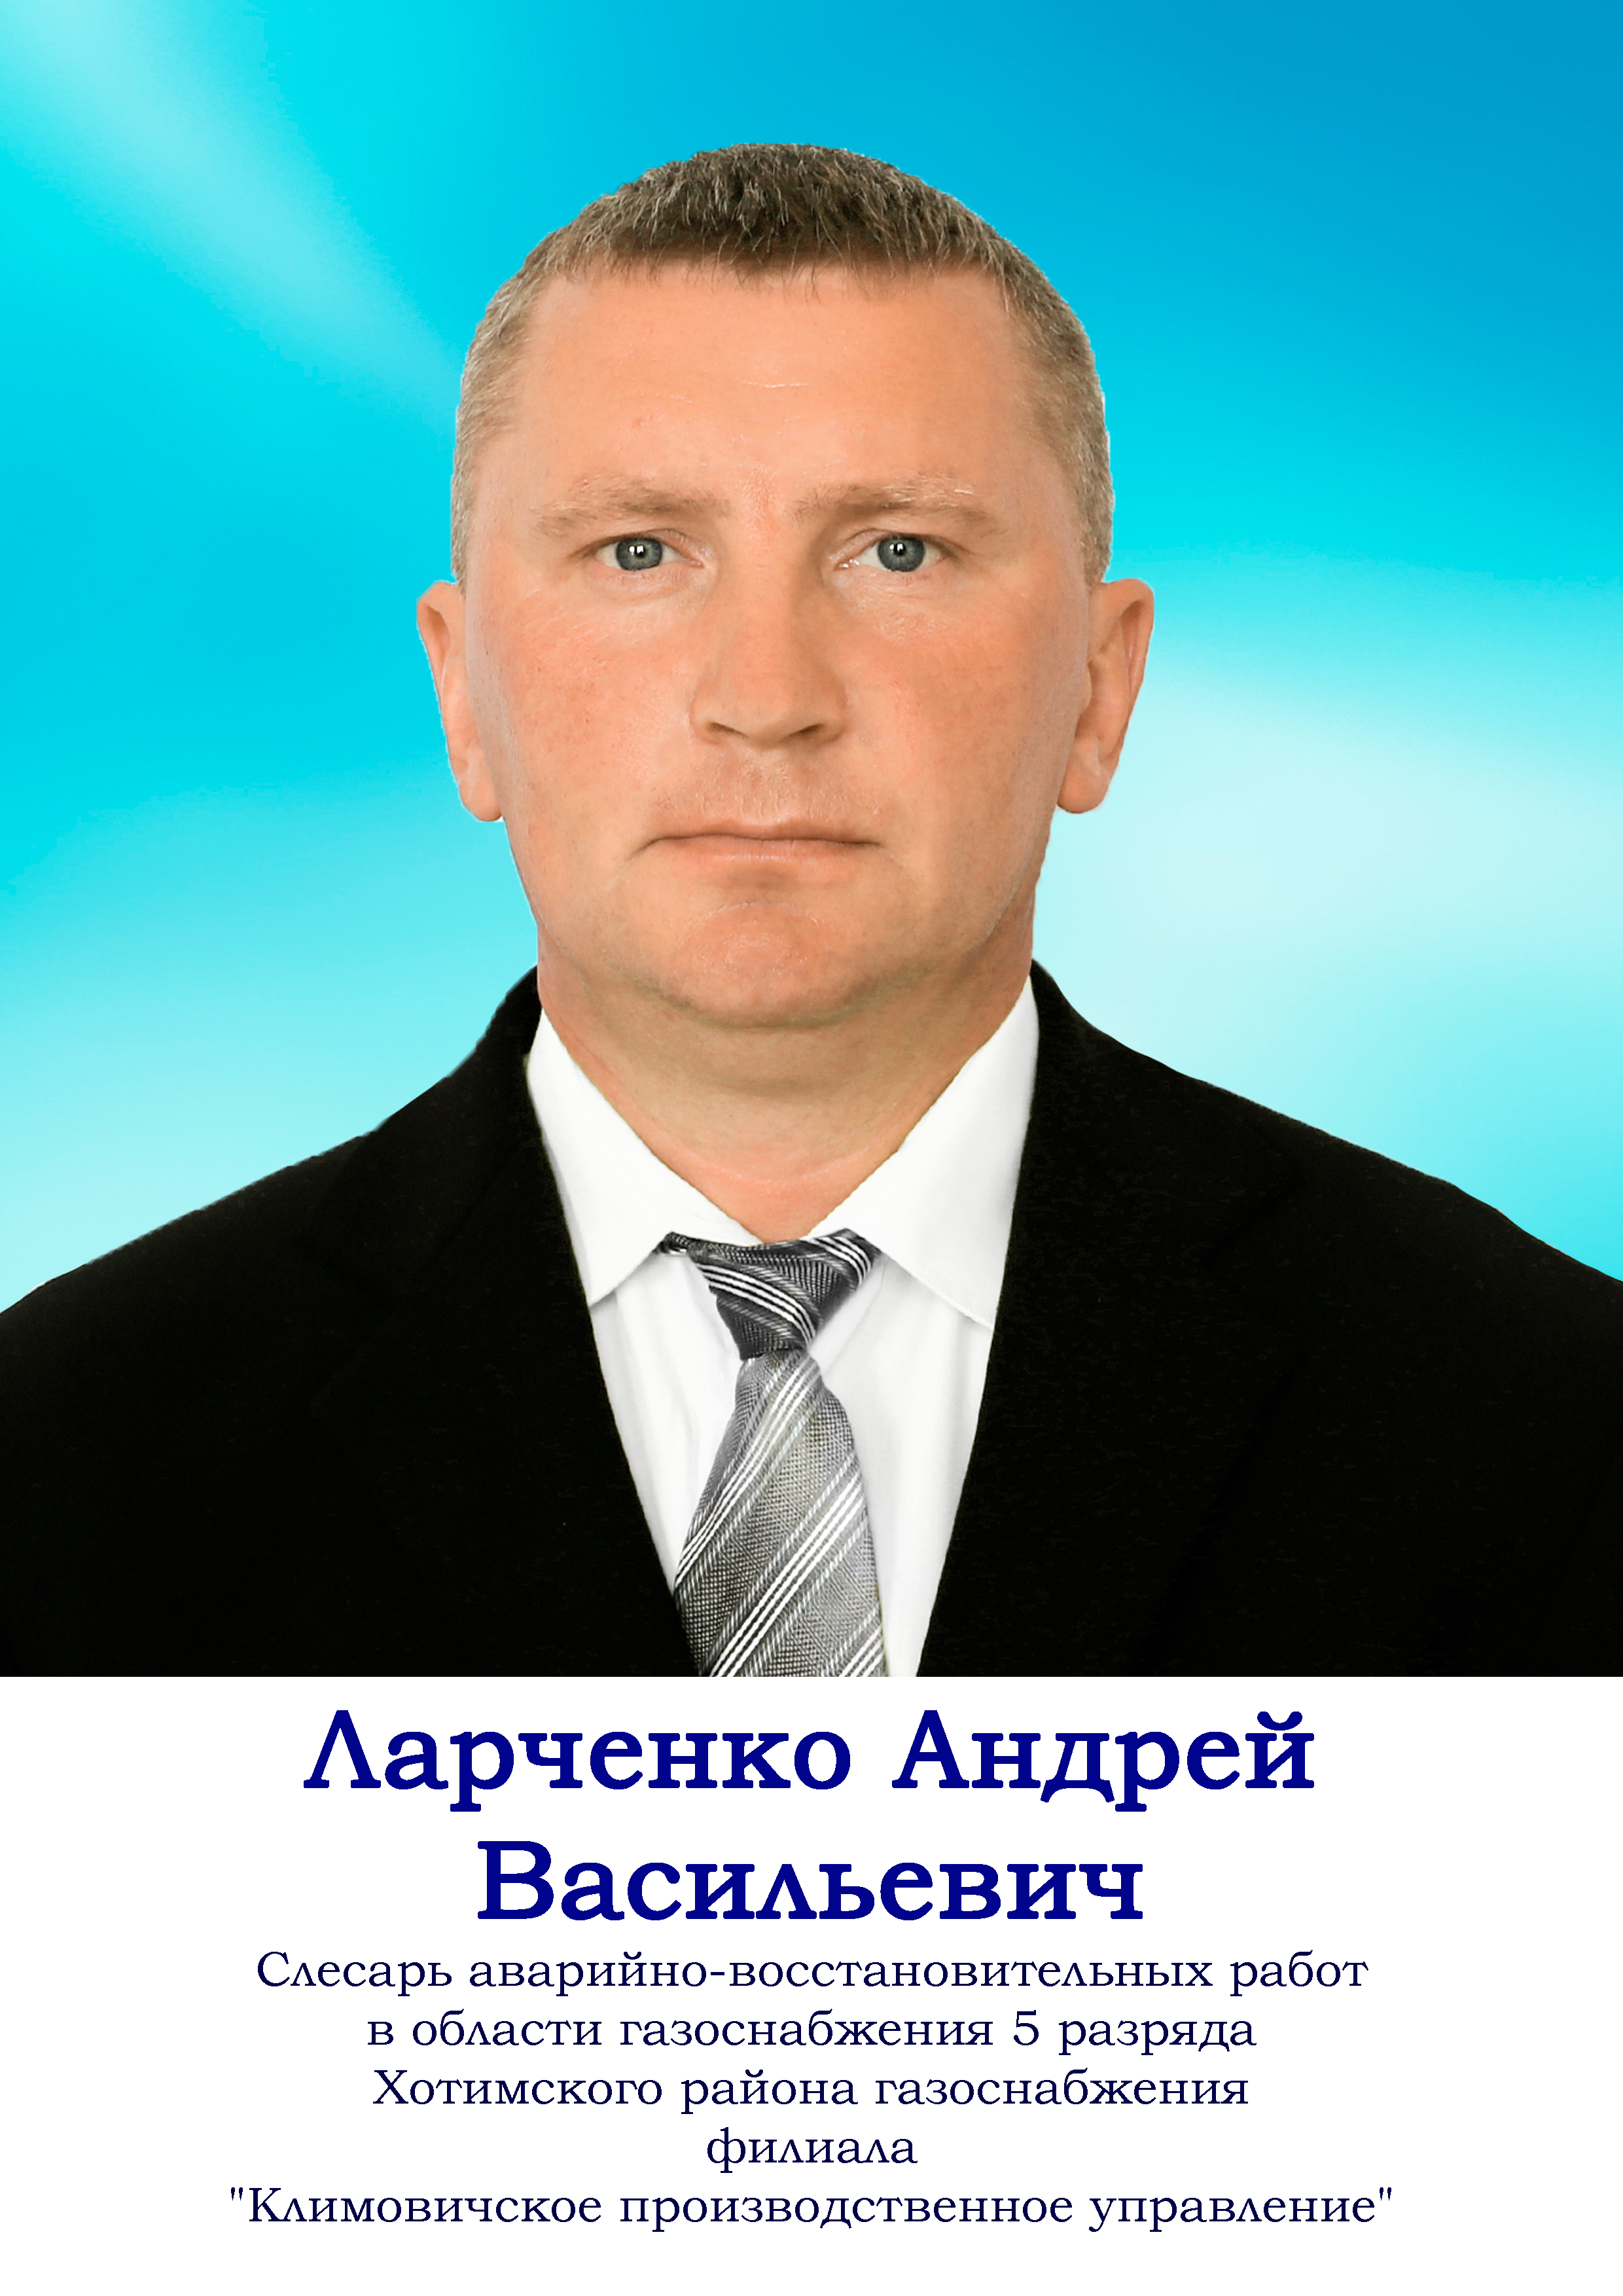 Ларченко Андрей Васильевич